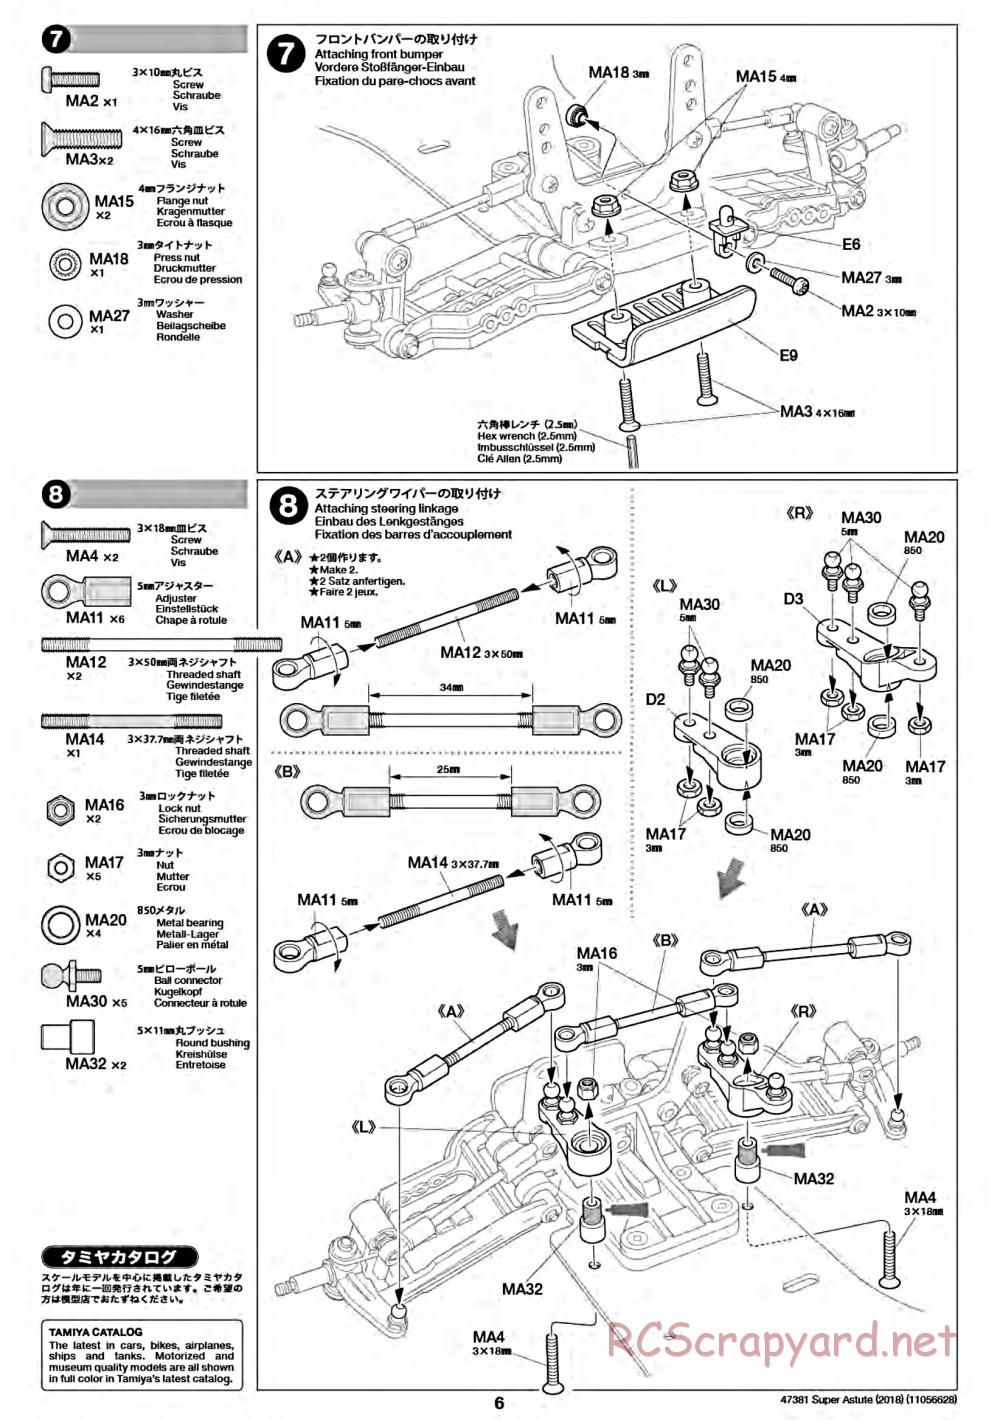 Tamiya - Super Astute (2018) Chassis - Manual - Page 6